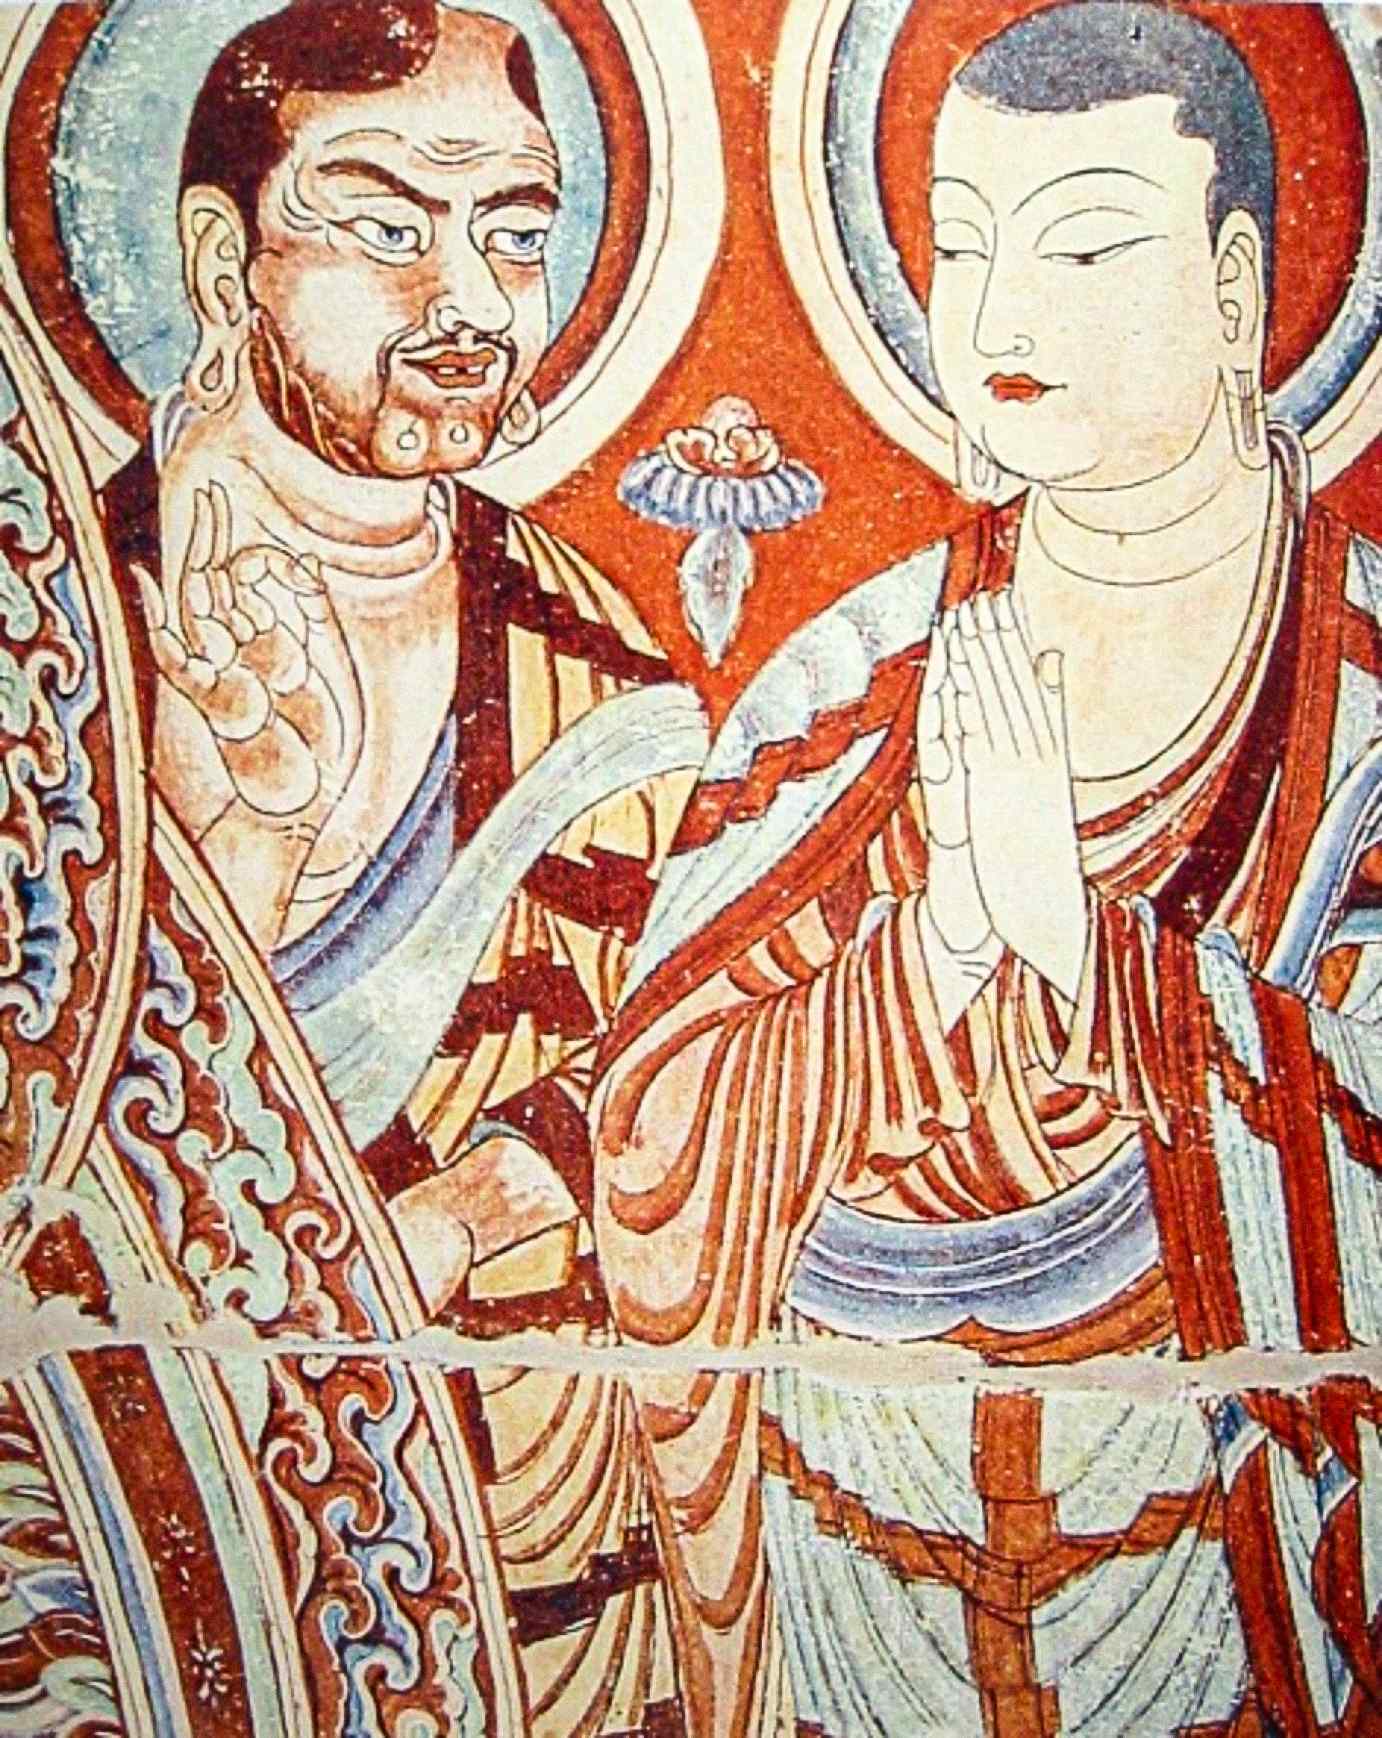 Ein kaukasischer zentralasiatischer Mönch, möglicherweise ein indogermanischer Sogdianer oder Tocharianer, der einen ostasiatischen Mönch, vielleicht einen türkischen Uiguren oder Chinesen, auf einem Fresko aus dem 9.